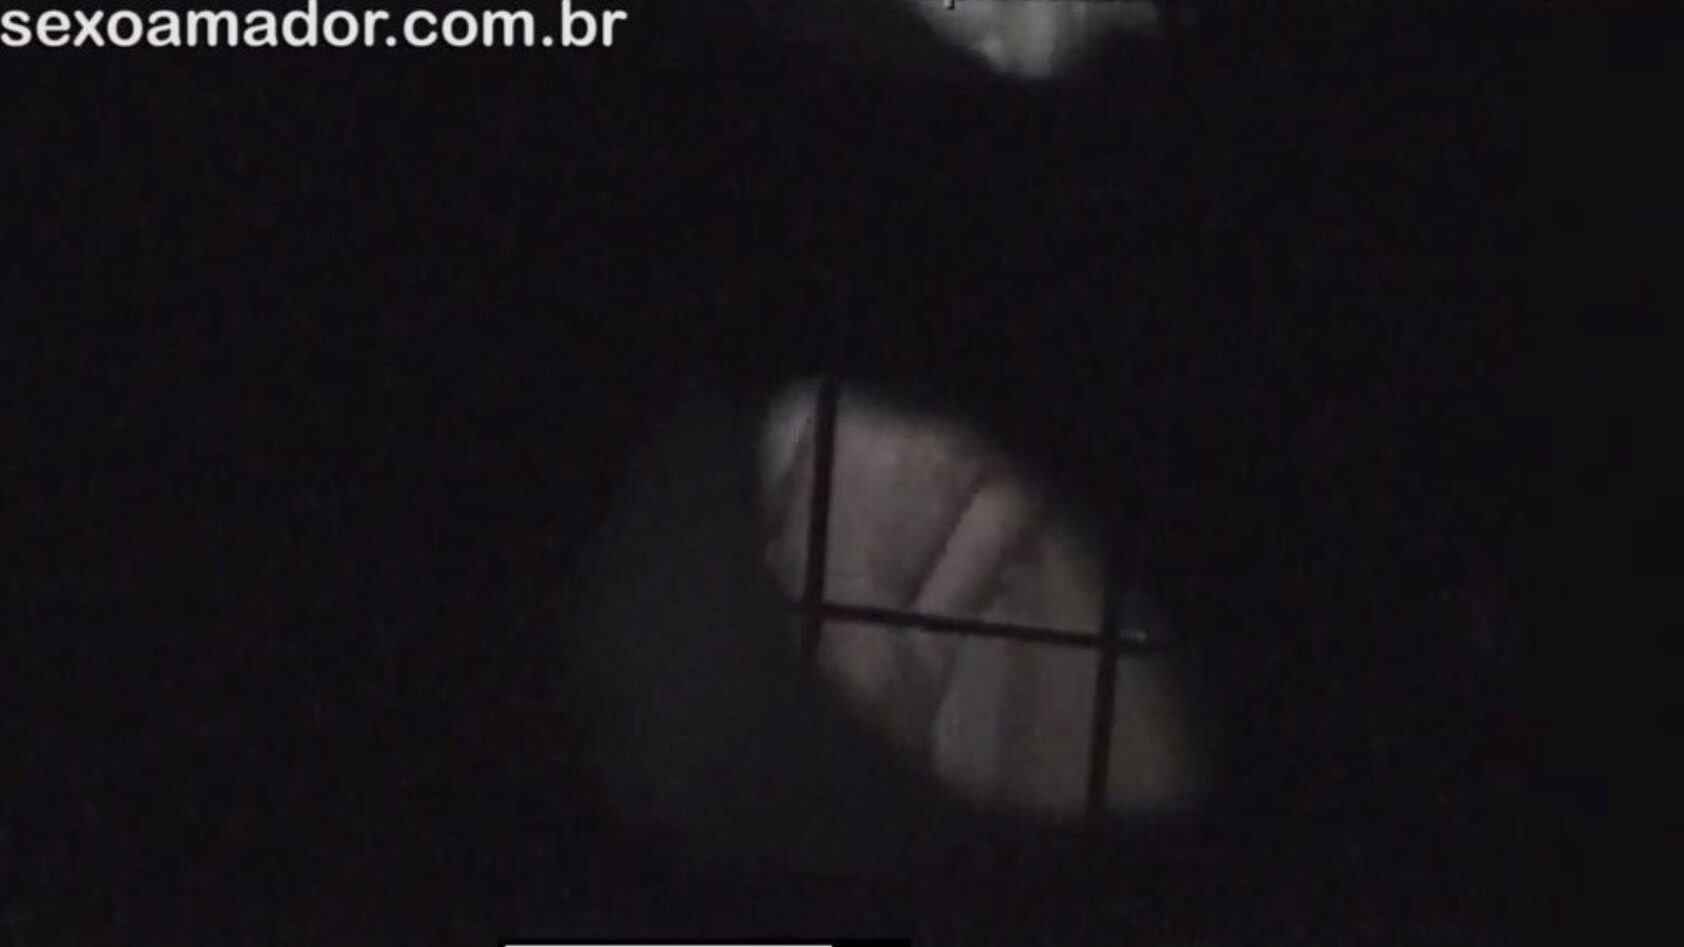 rubia es filmada en secreto por un vecino voyeur encubierto detrás de ladrillos huecos